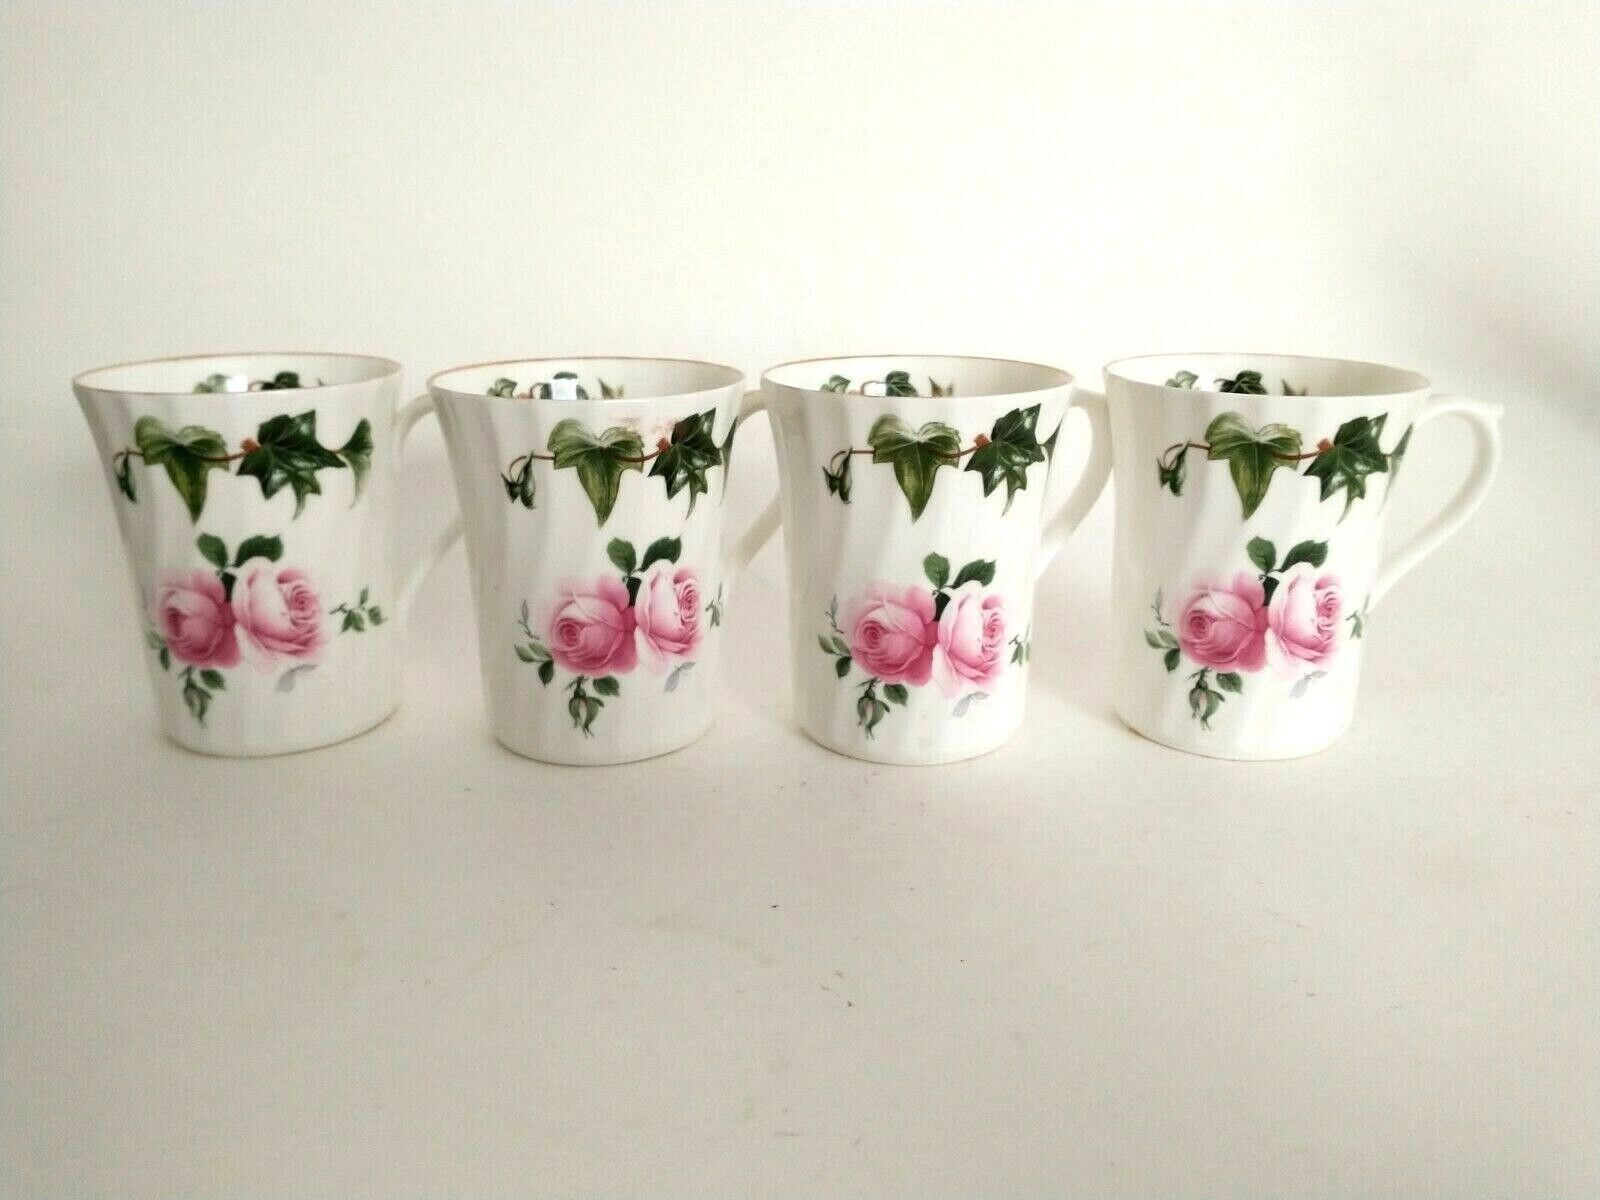 Regency English Bone China Set of 4 Mugs Pink Rose Ivy Leaf Design